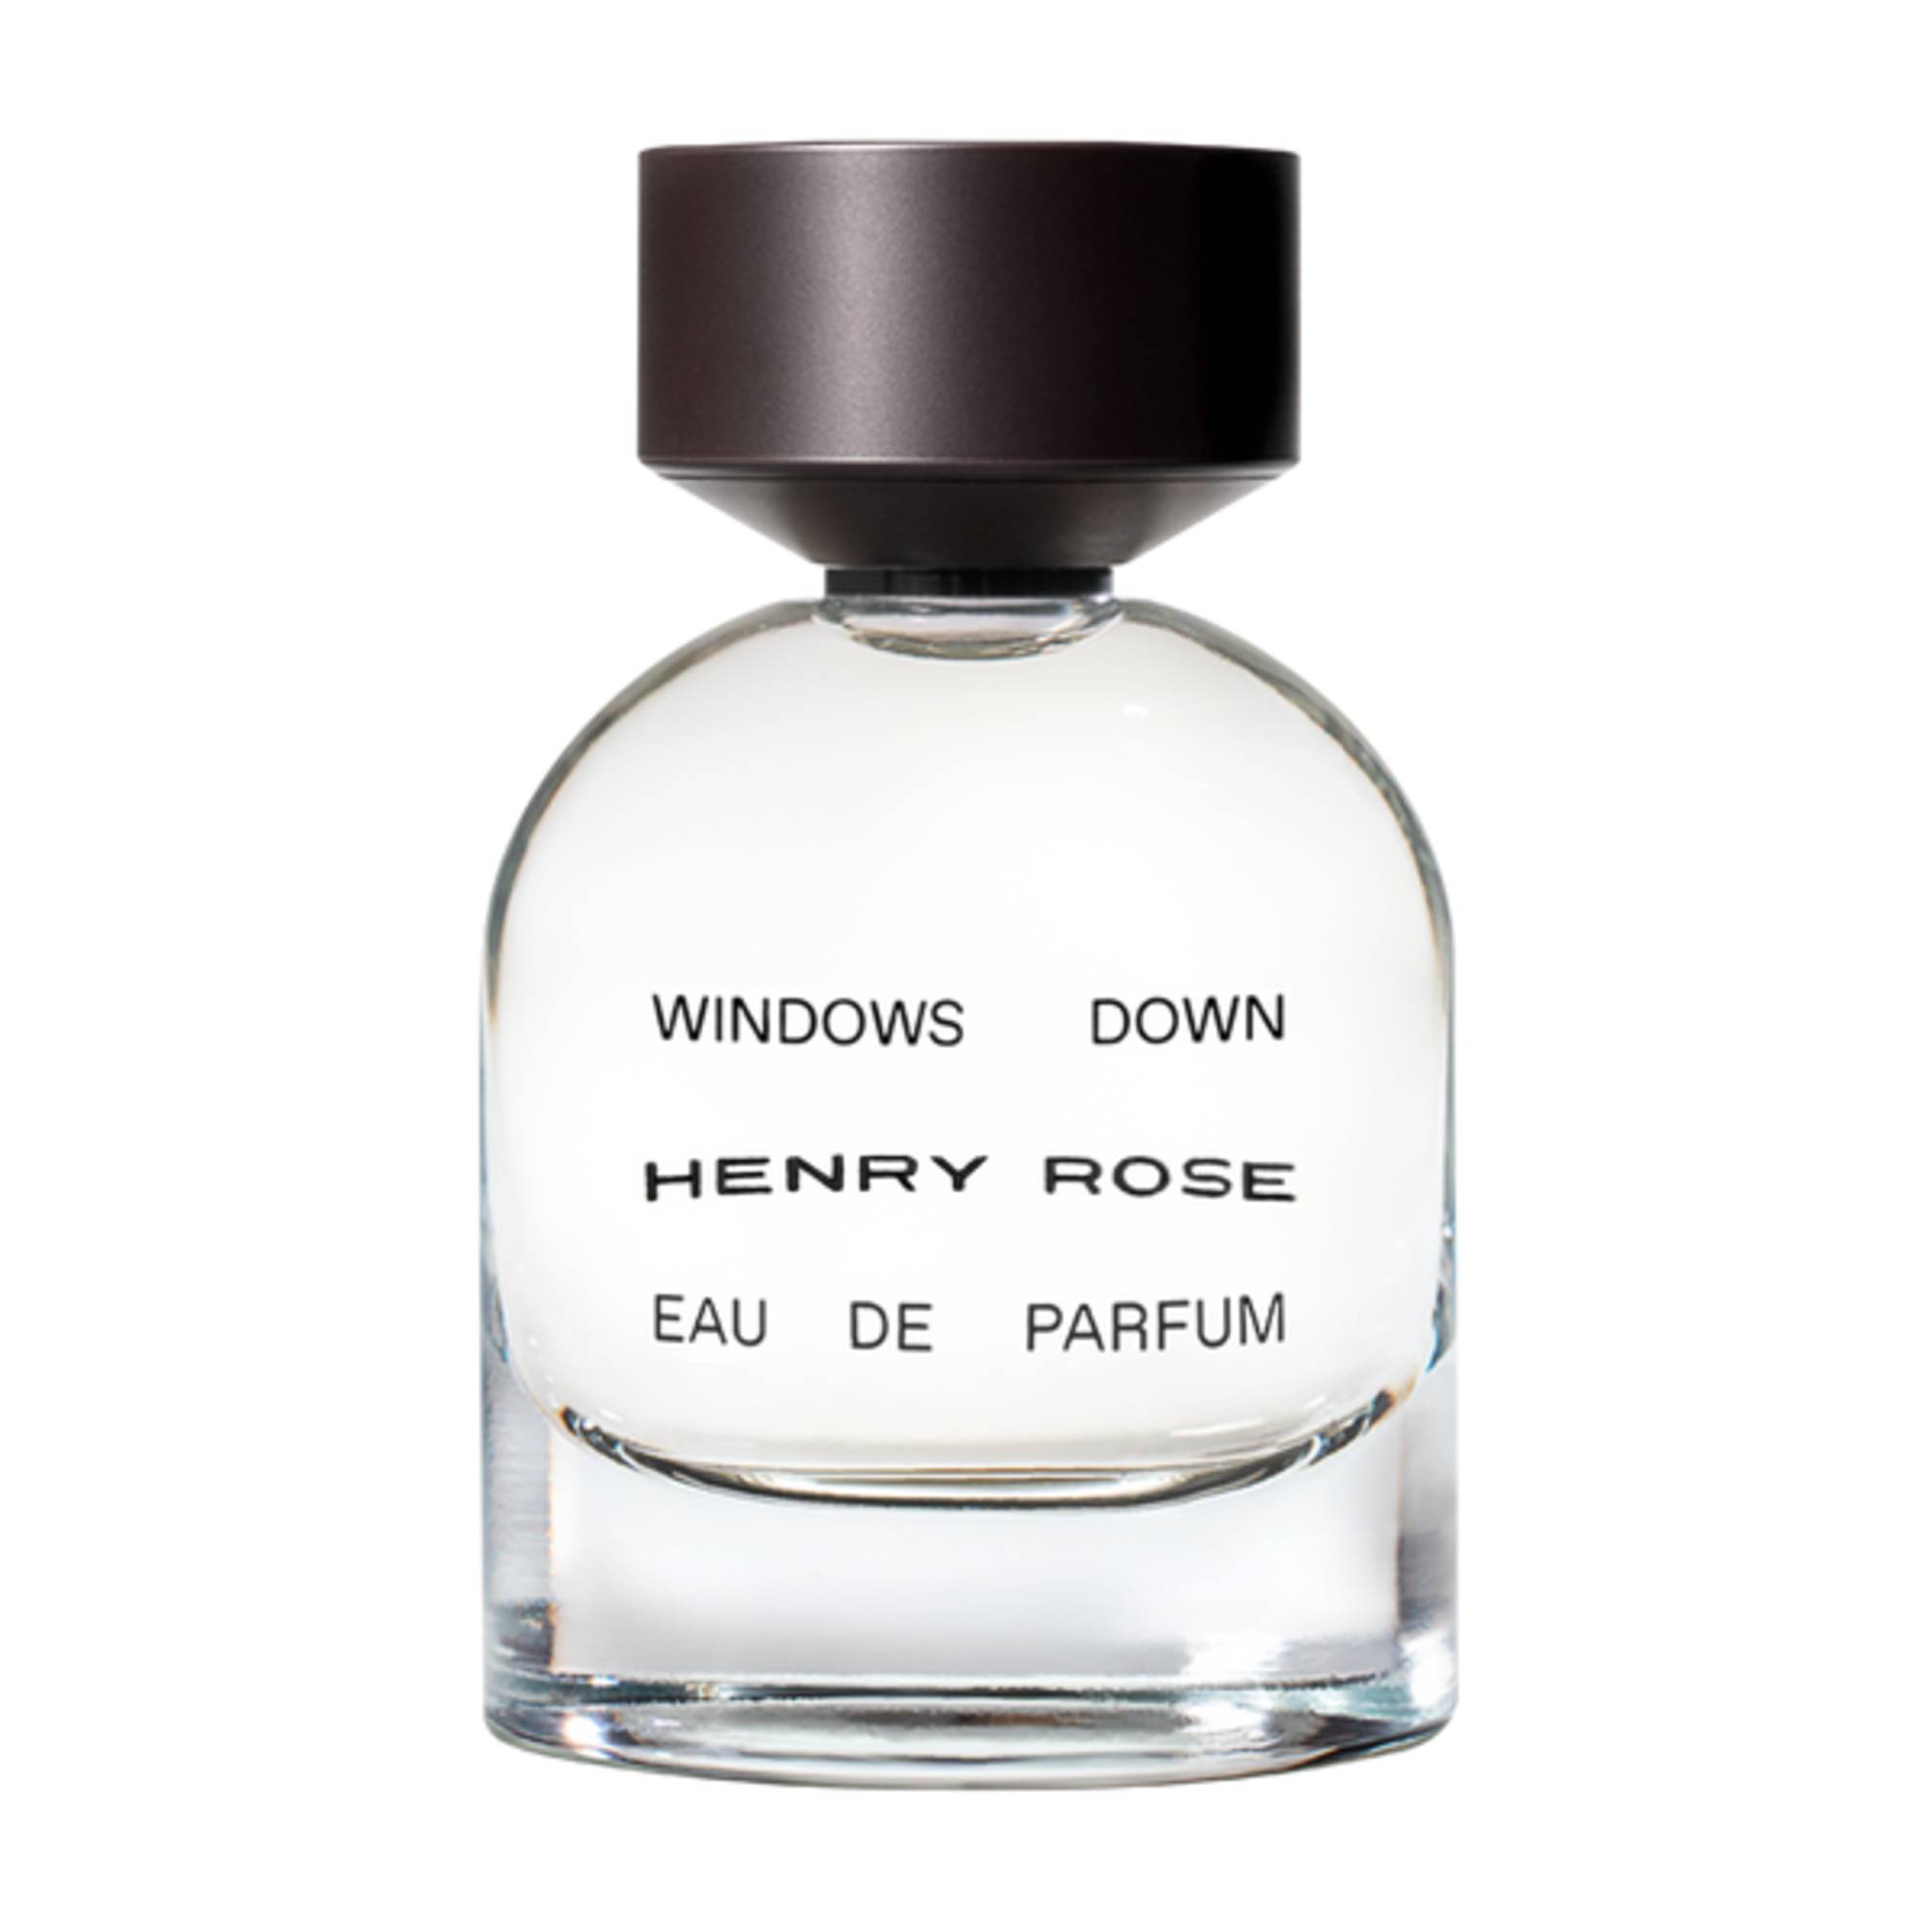 Henry Rose Windows Down Eau de Parfum, 1.7 oz